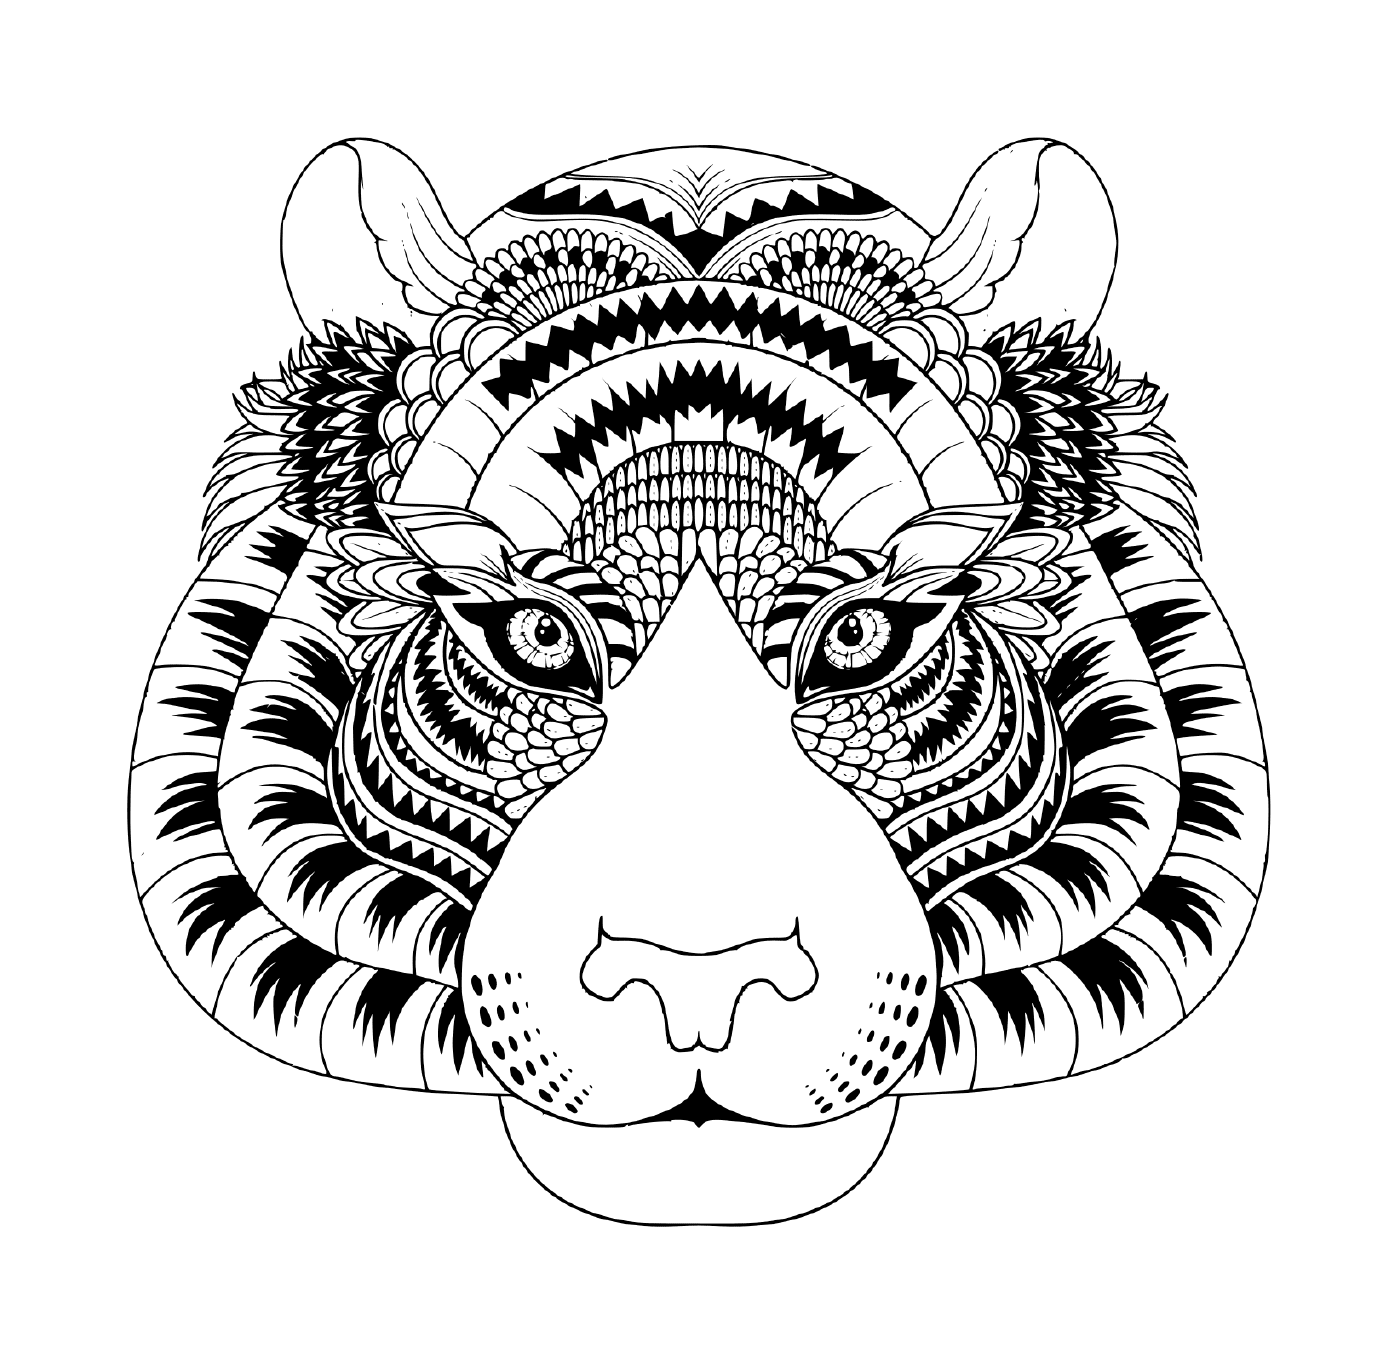  la cabeza de un tigre con detalles zentanglés 